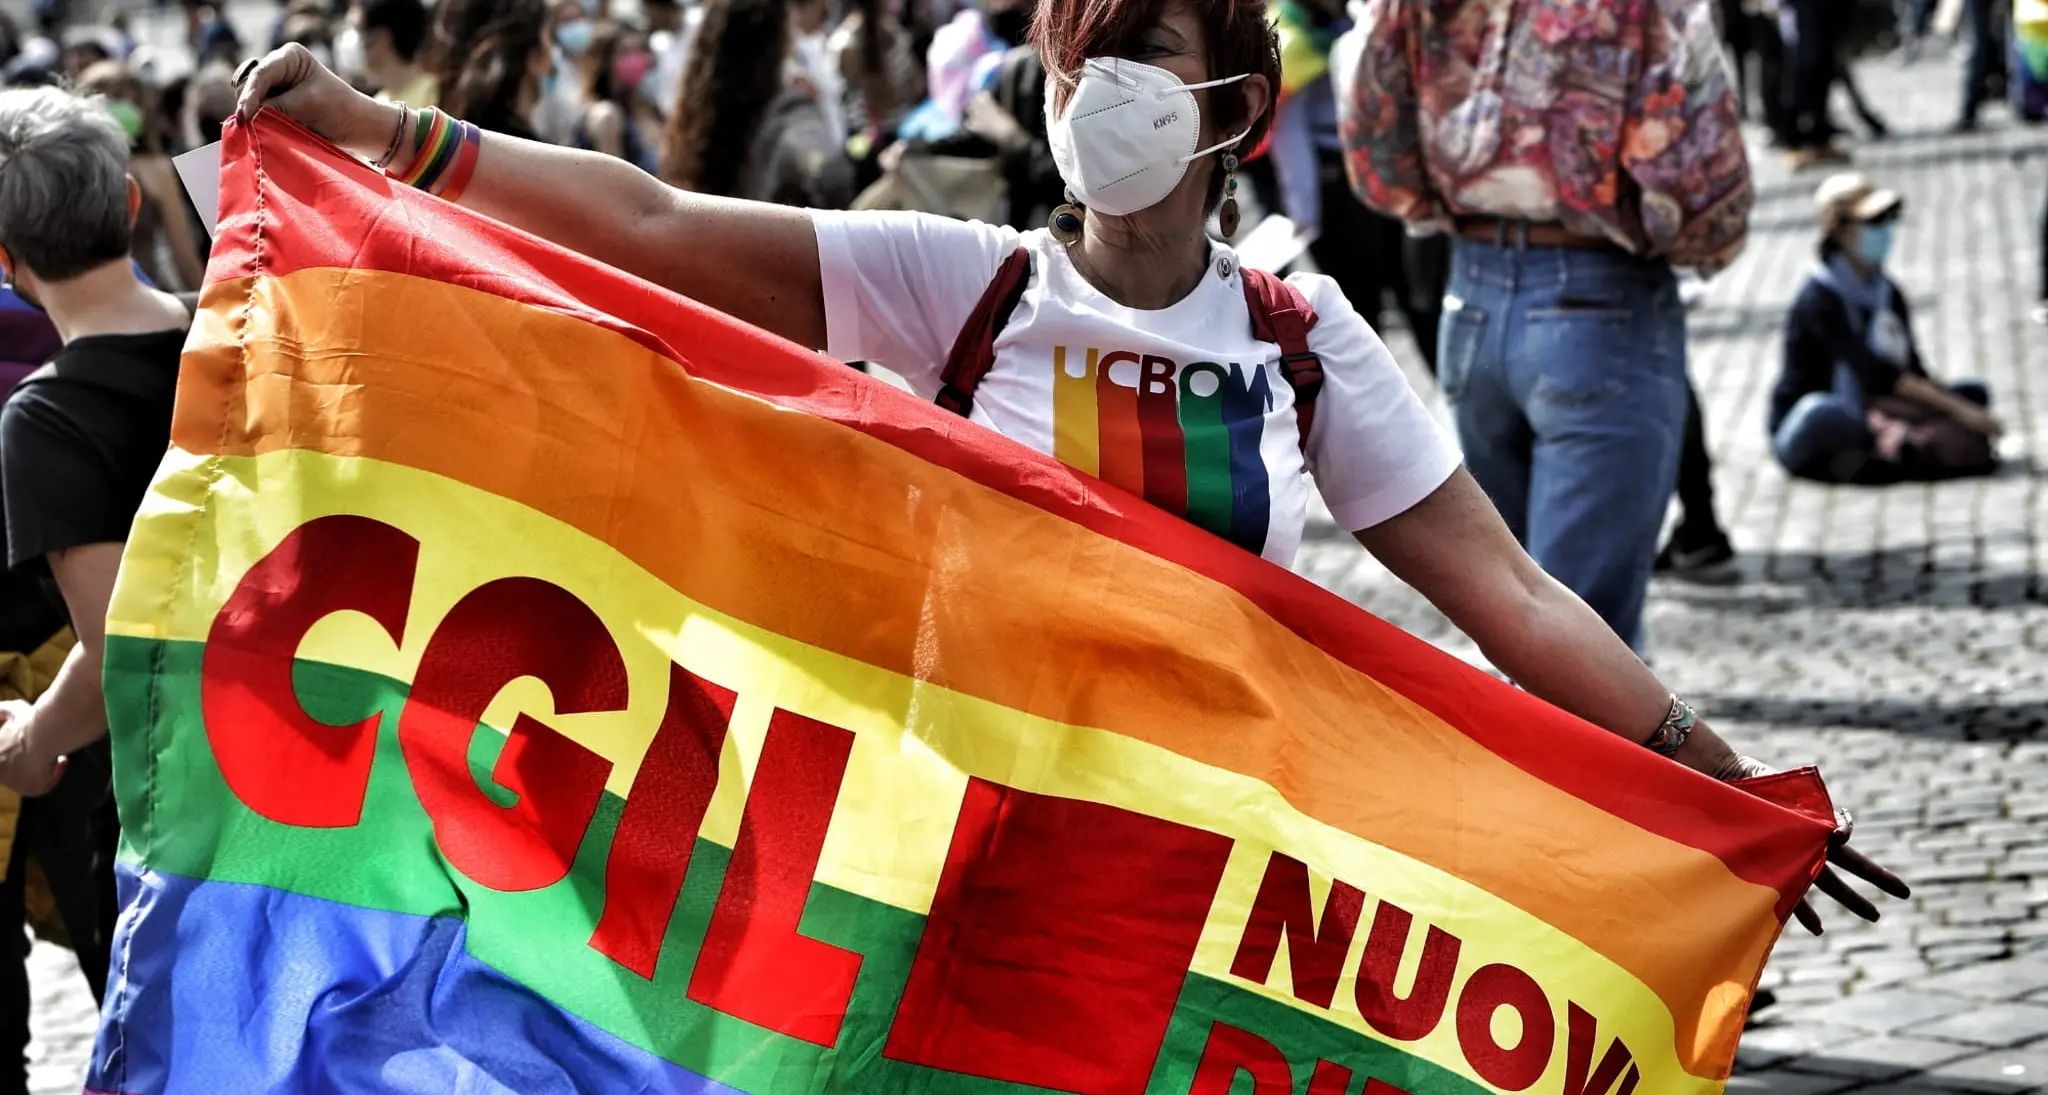 Omofobia: Gallittu, discriminazioni pesano, serve cambio di passo che riconosca a tutti uguali diritti